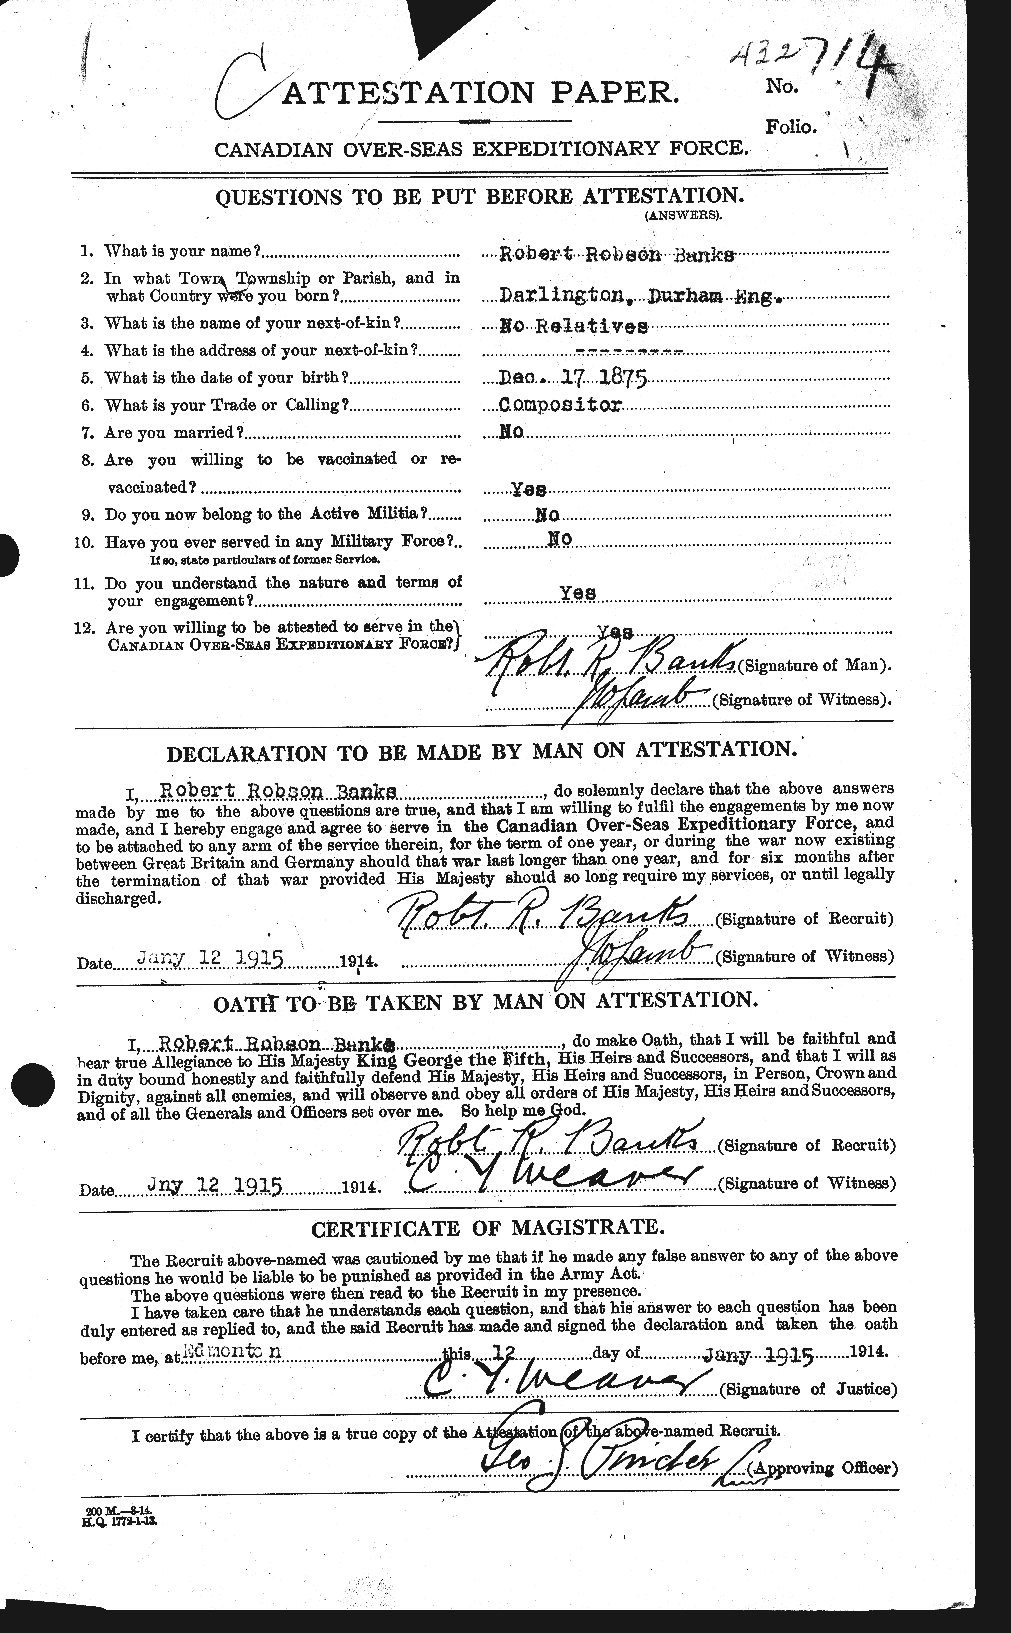 Dossiers du Personnel de la Première Guerre mondiale - CEC 224955a